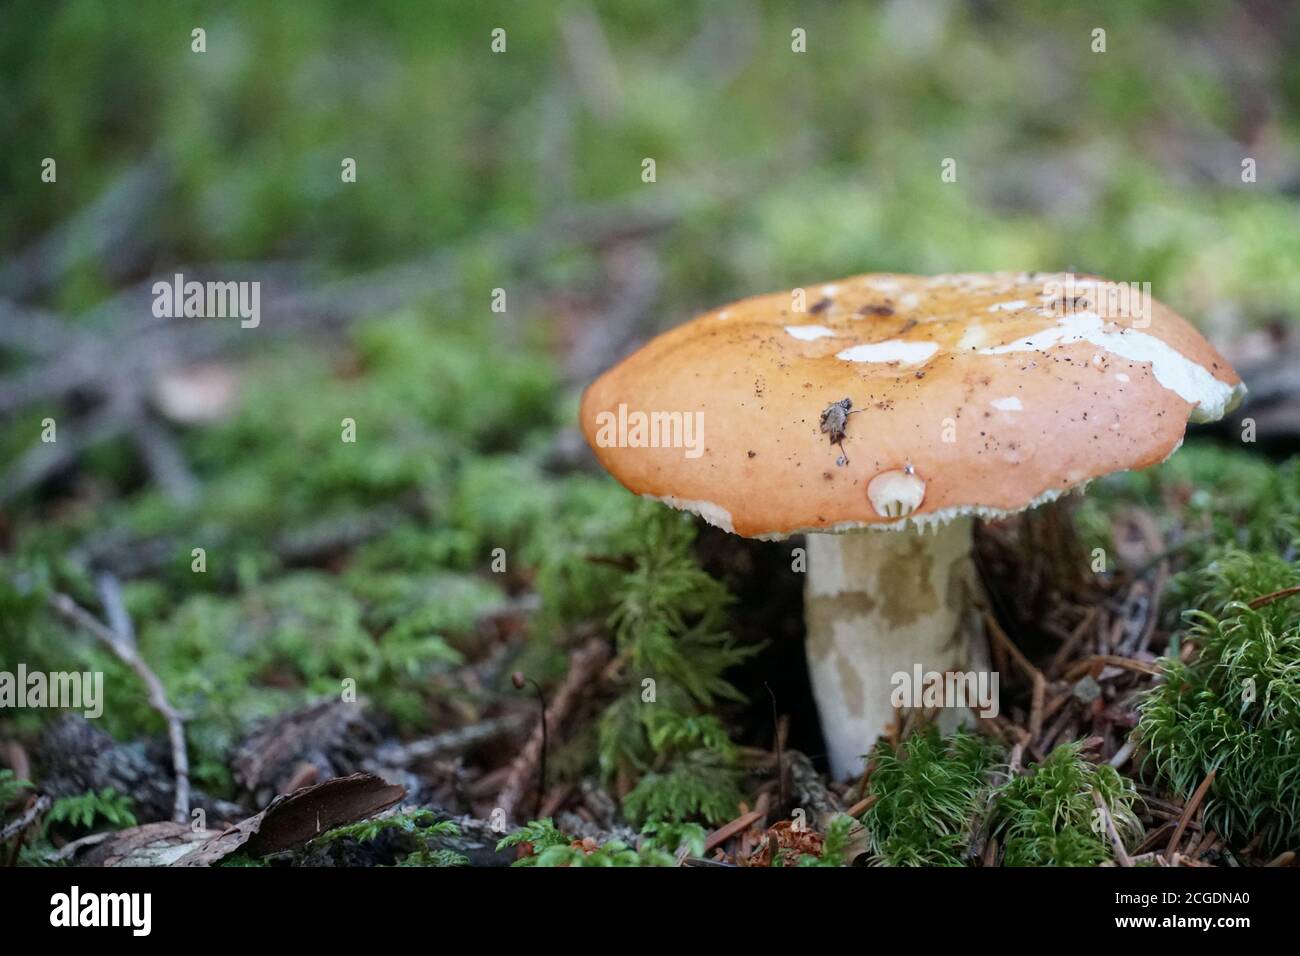 Ein einzelner Pilz auf dem grünen Waldboden mit einem negativen Raum Nahaufnahme Foto. Stockfoto